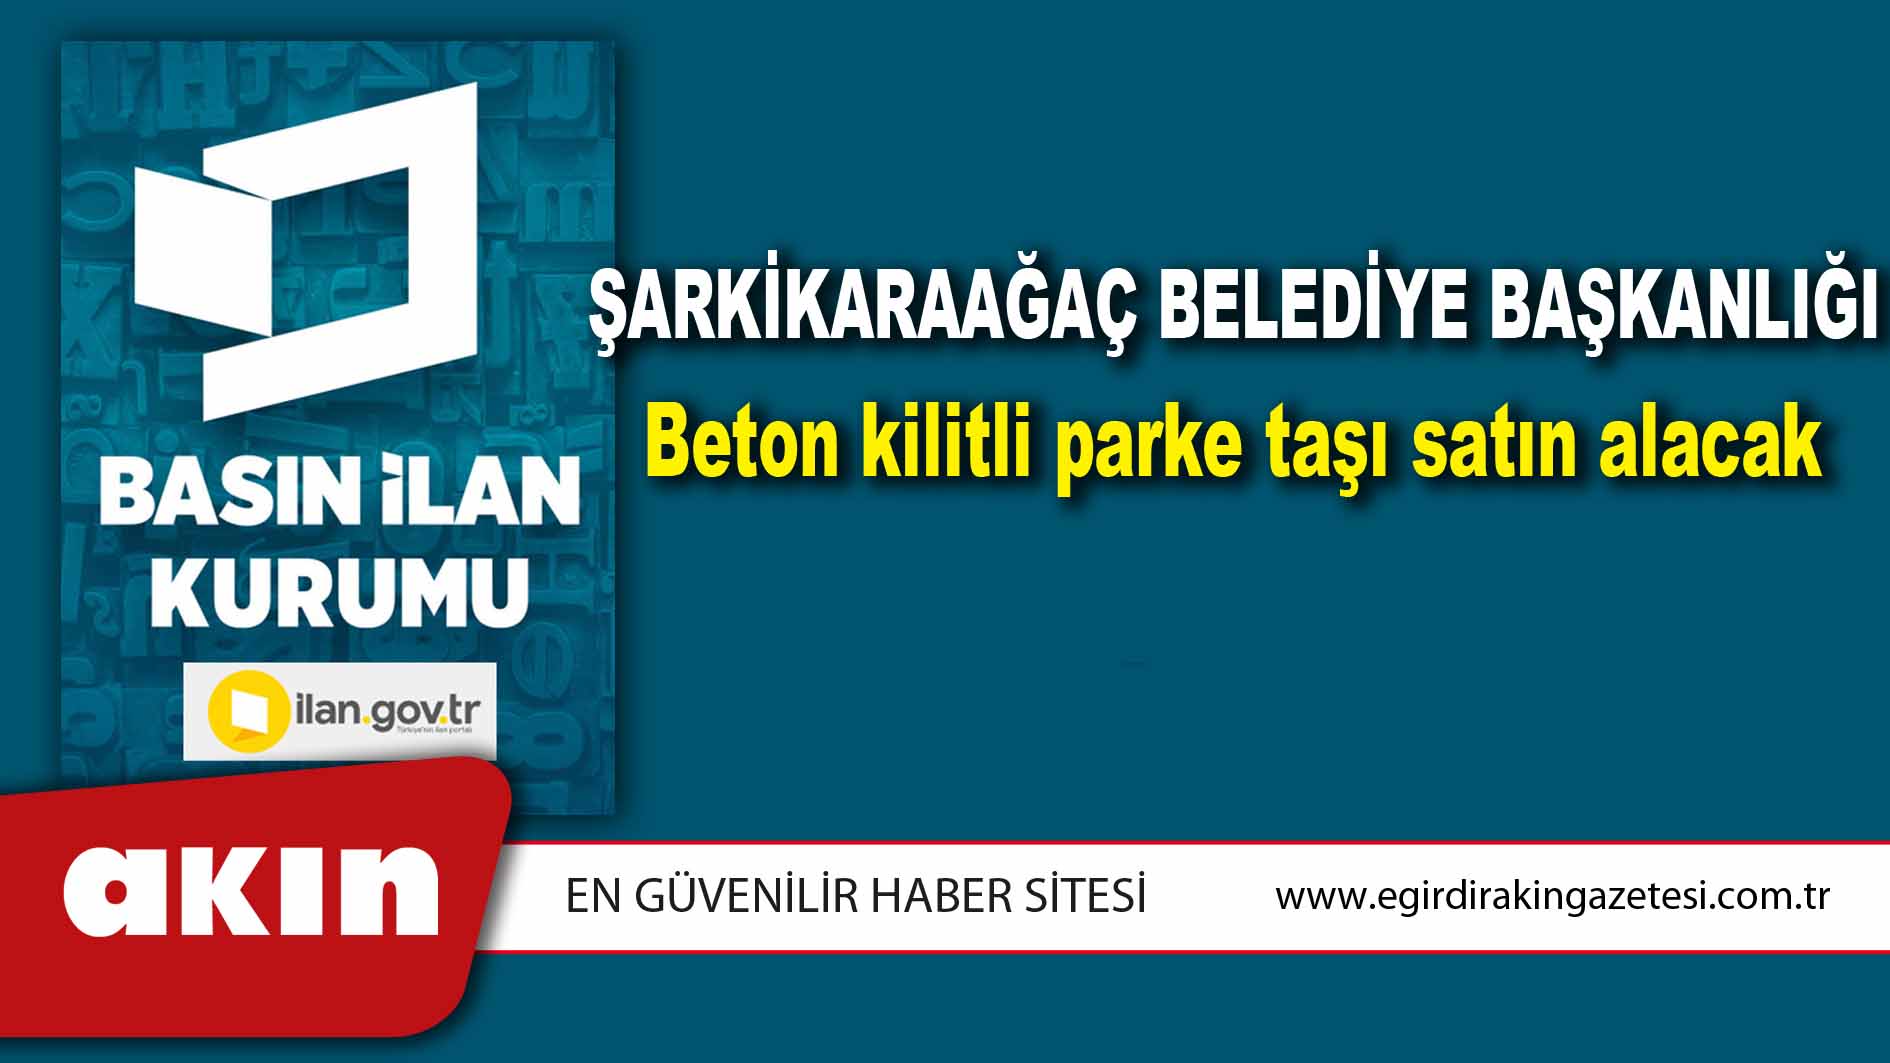 Şarkikaraağaç Belediye Başkanlığı Beton kilitli parke taşı satın alacak